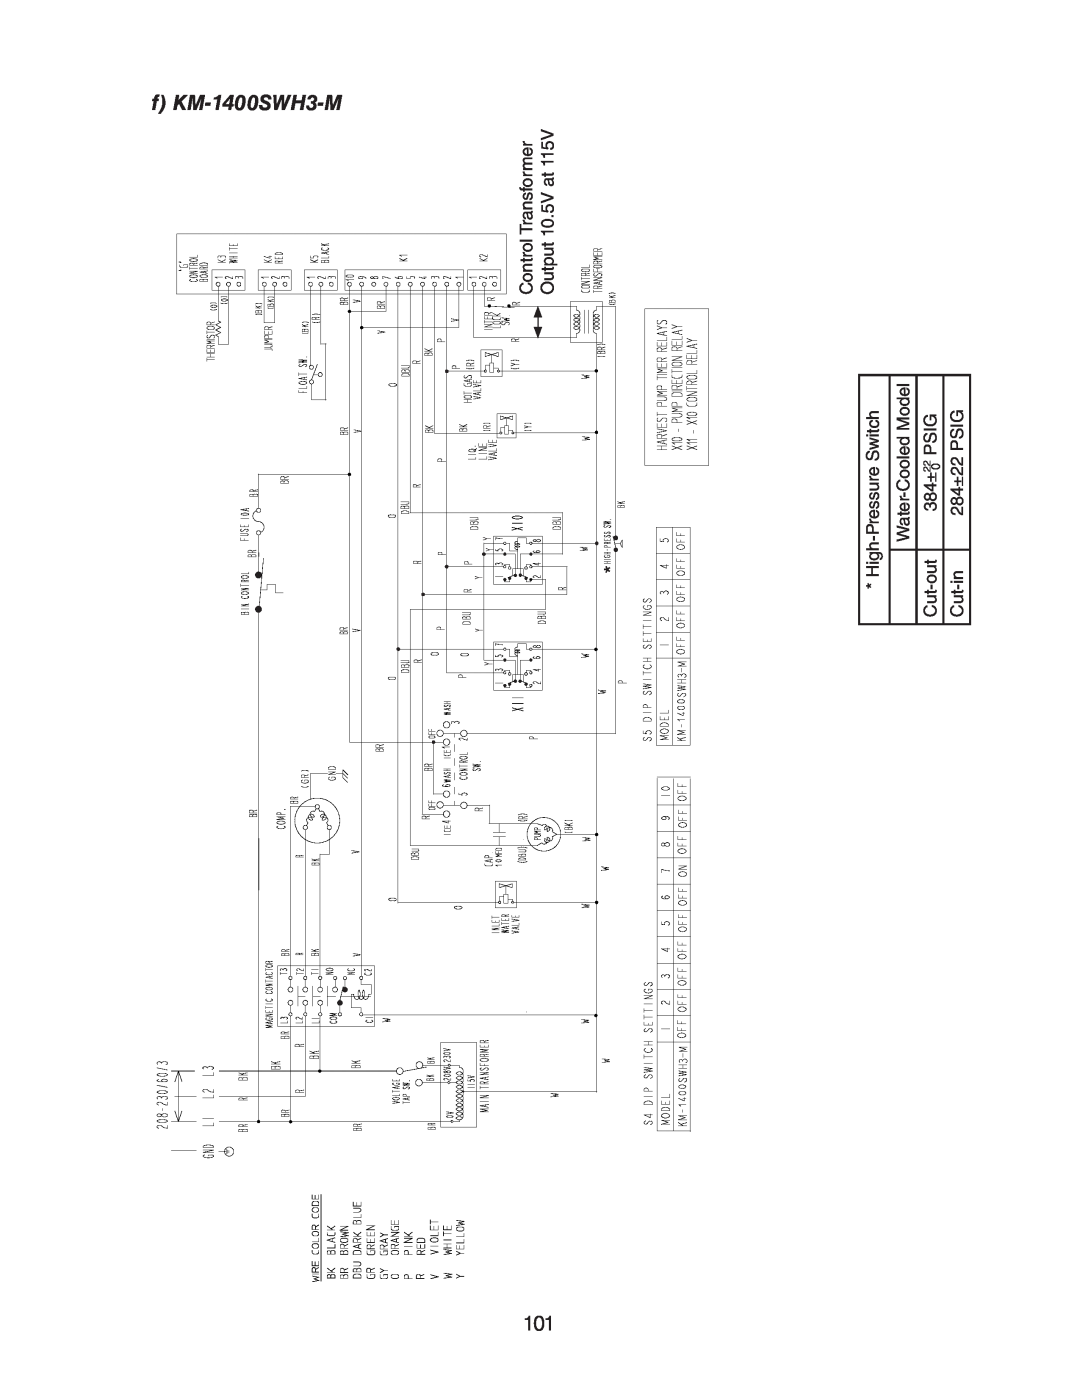 Hoshizaki SRH/3 KM-1400SWH-M f KM-1400SWH3-M, Control Transformer, Output 10.5V at, High-Pressure Switch, Cut-out, Cut-in 